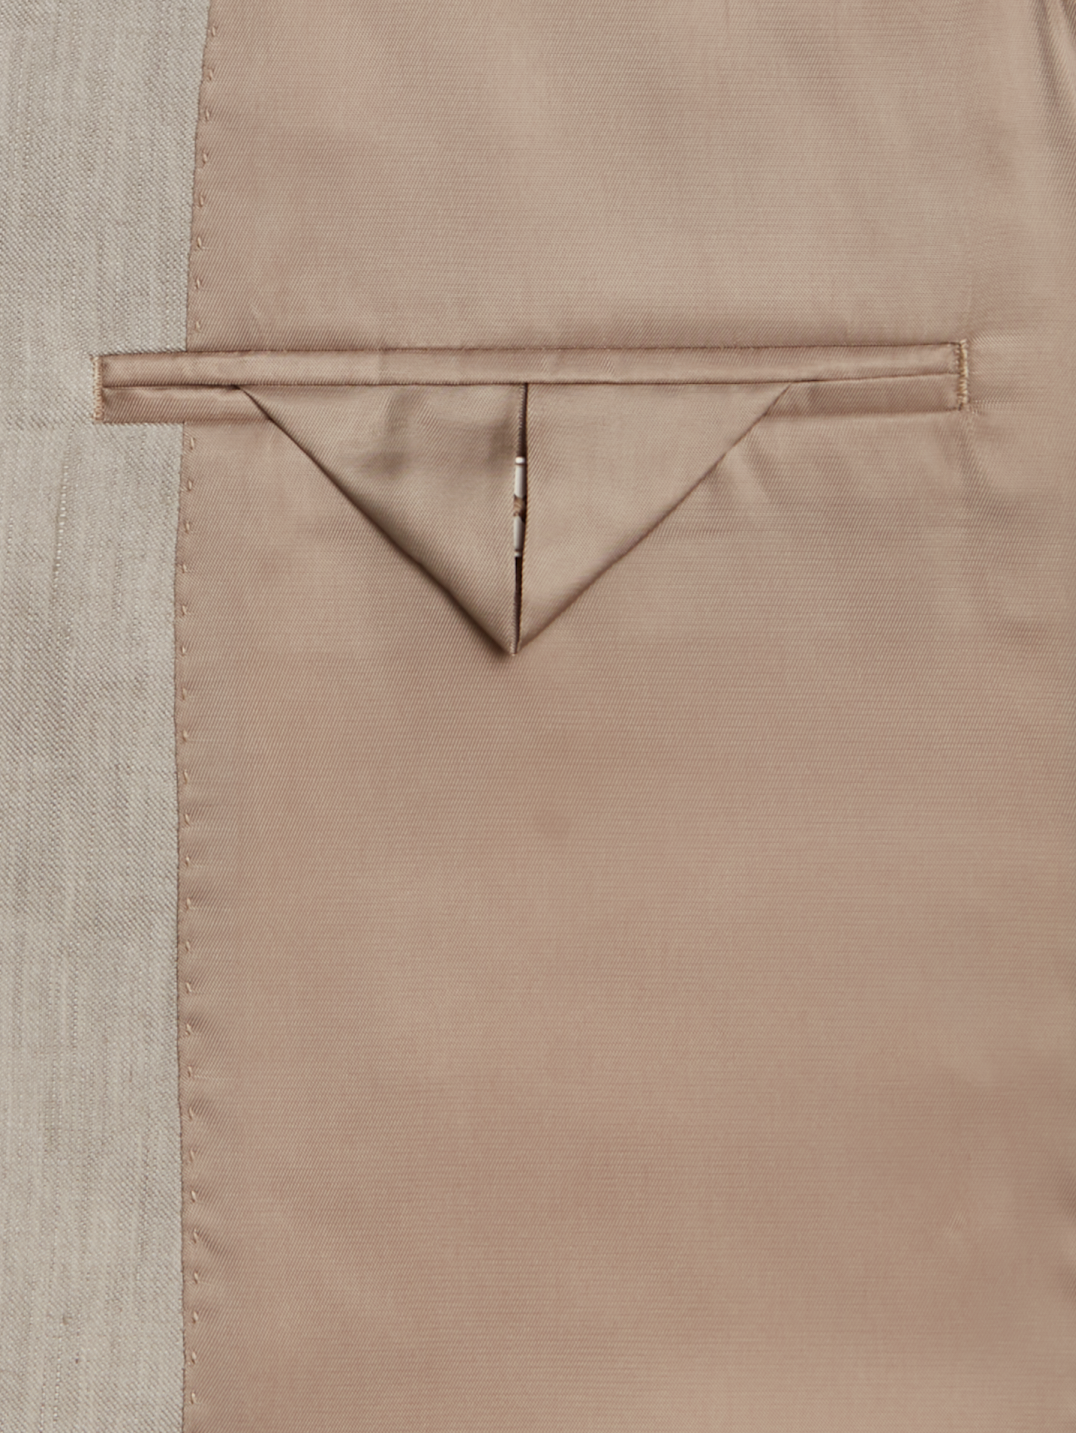 Calvin Klein Slim Fit Linen-Blend Suit Separates Jacket, All Sale